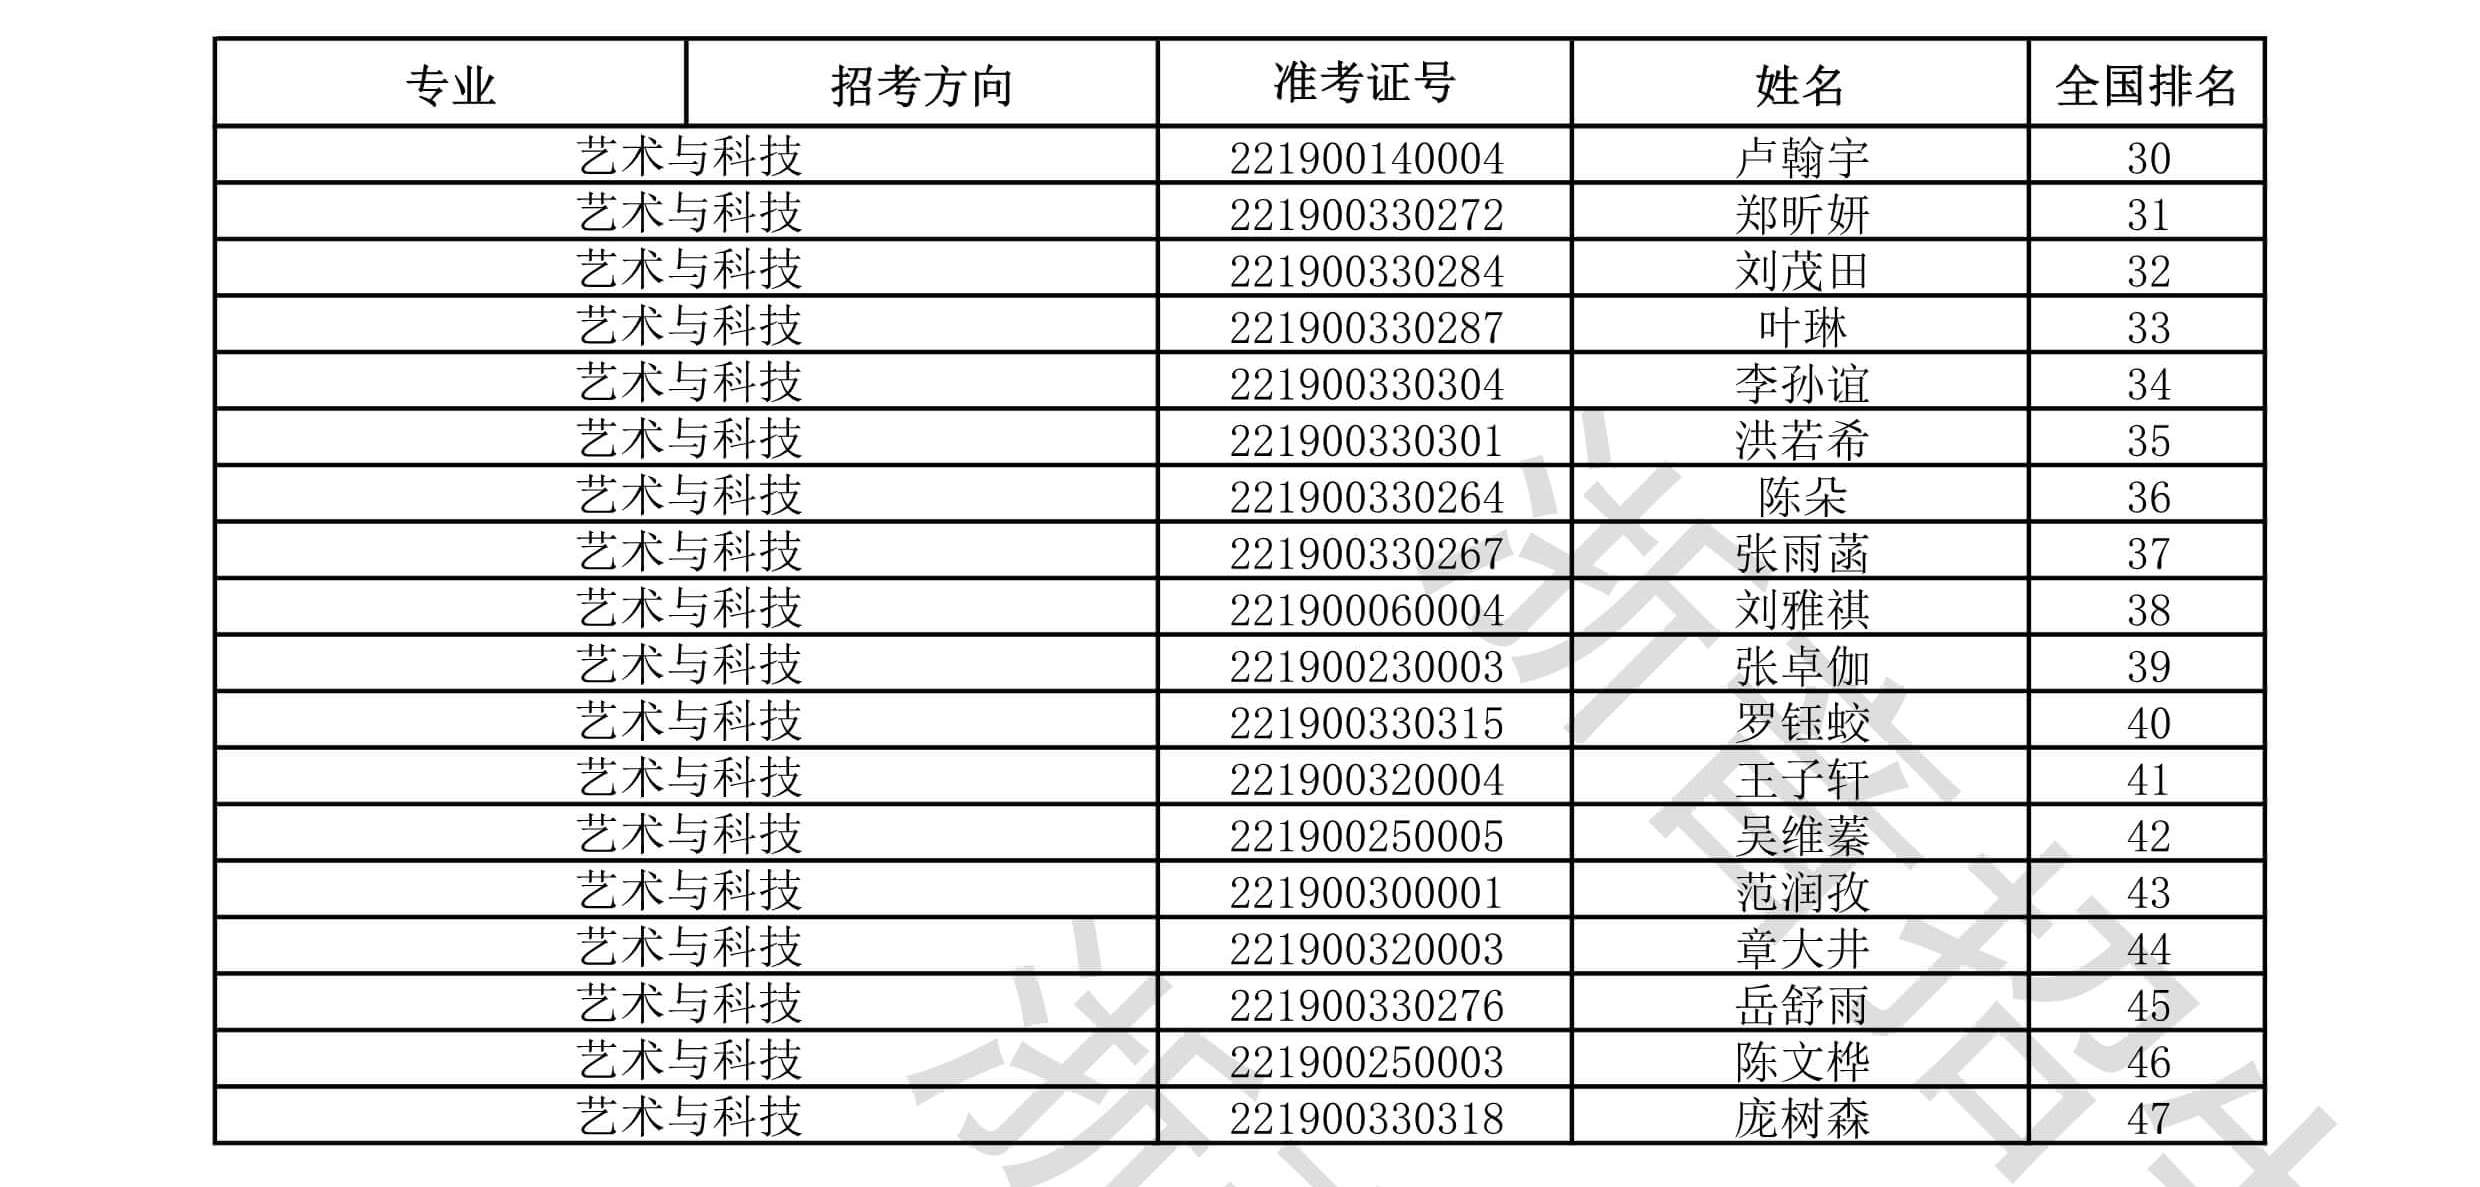 关于浙江音乐学院2022年音乐、舞蹈类本科招生专业校考合格分数线及合格考生名单的公示及公示时间